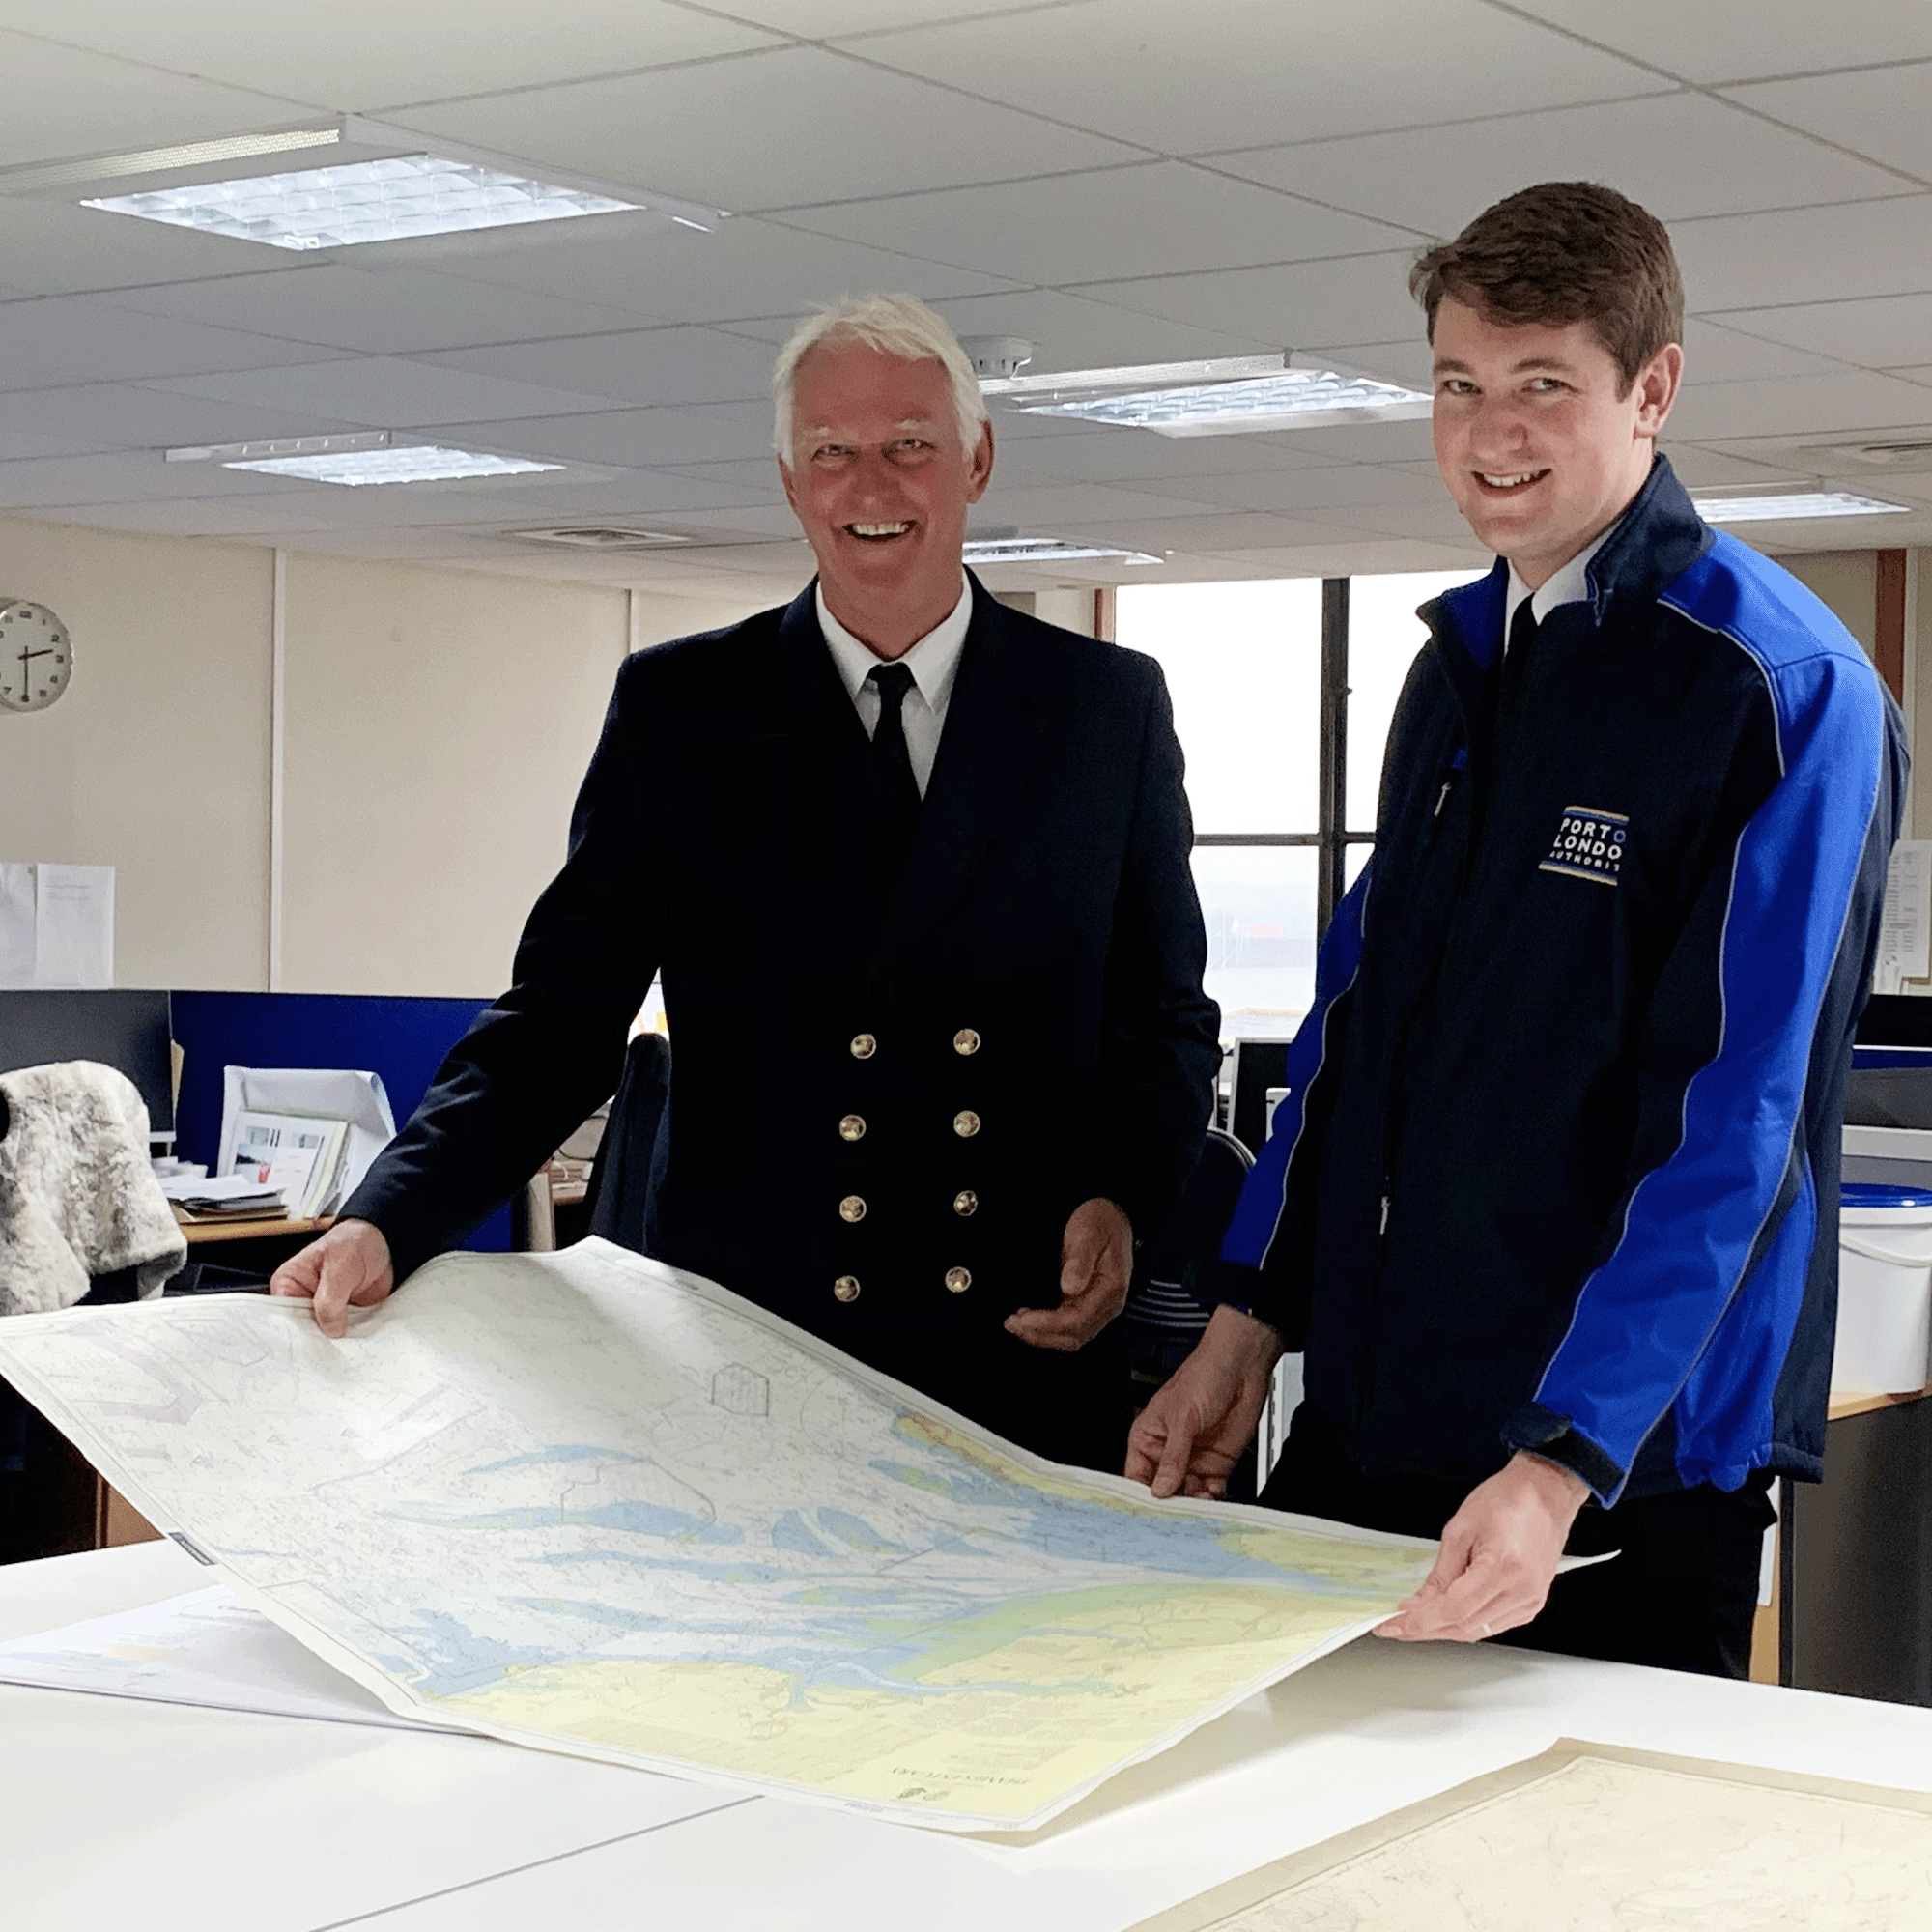 Son follows father into Thames pilot career